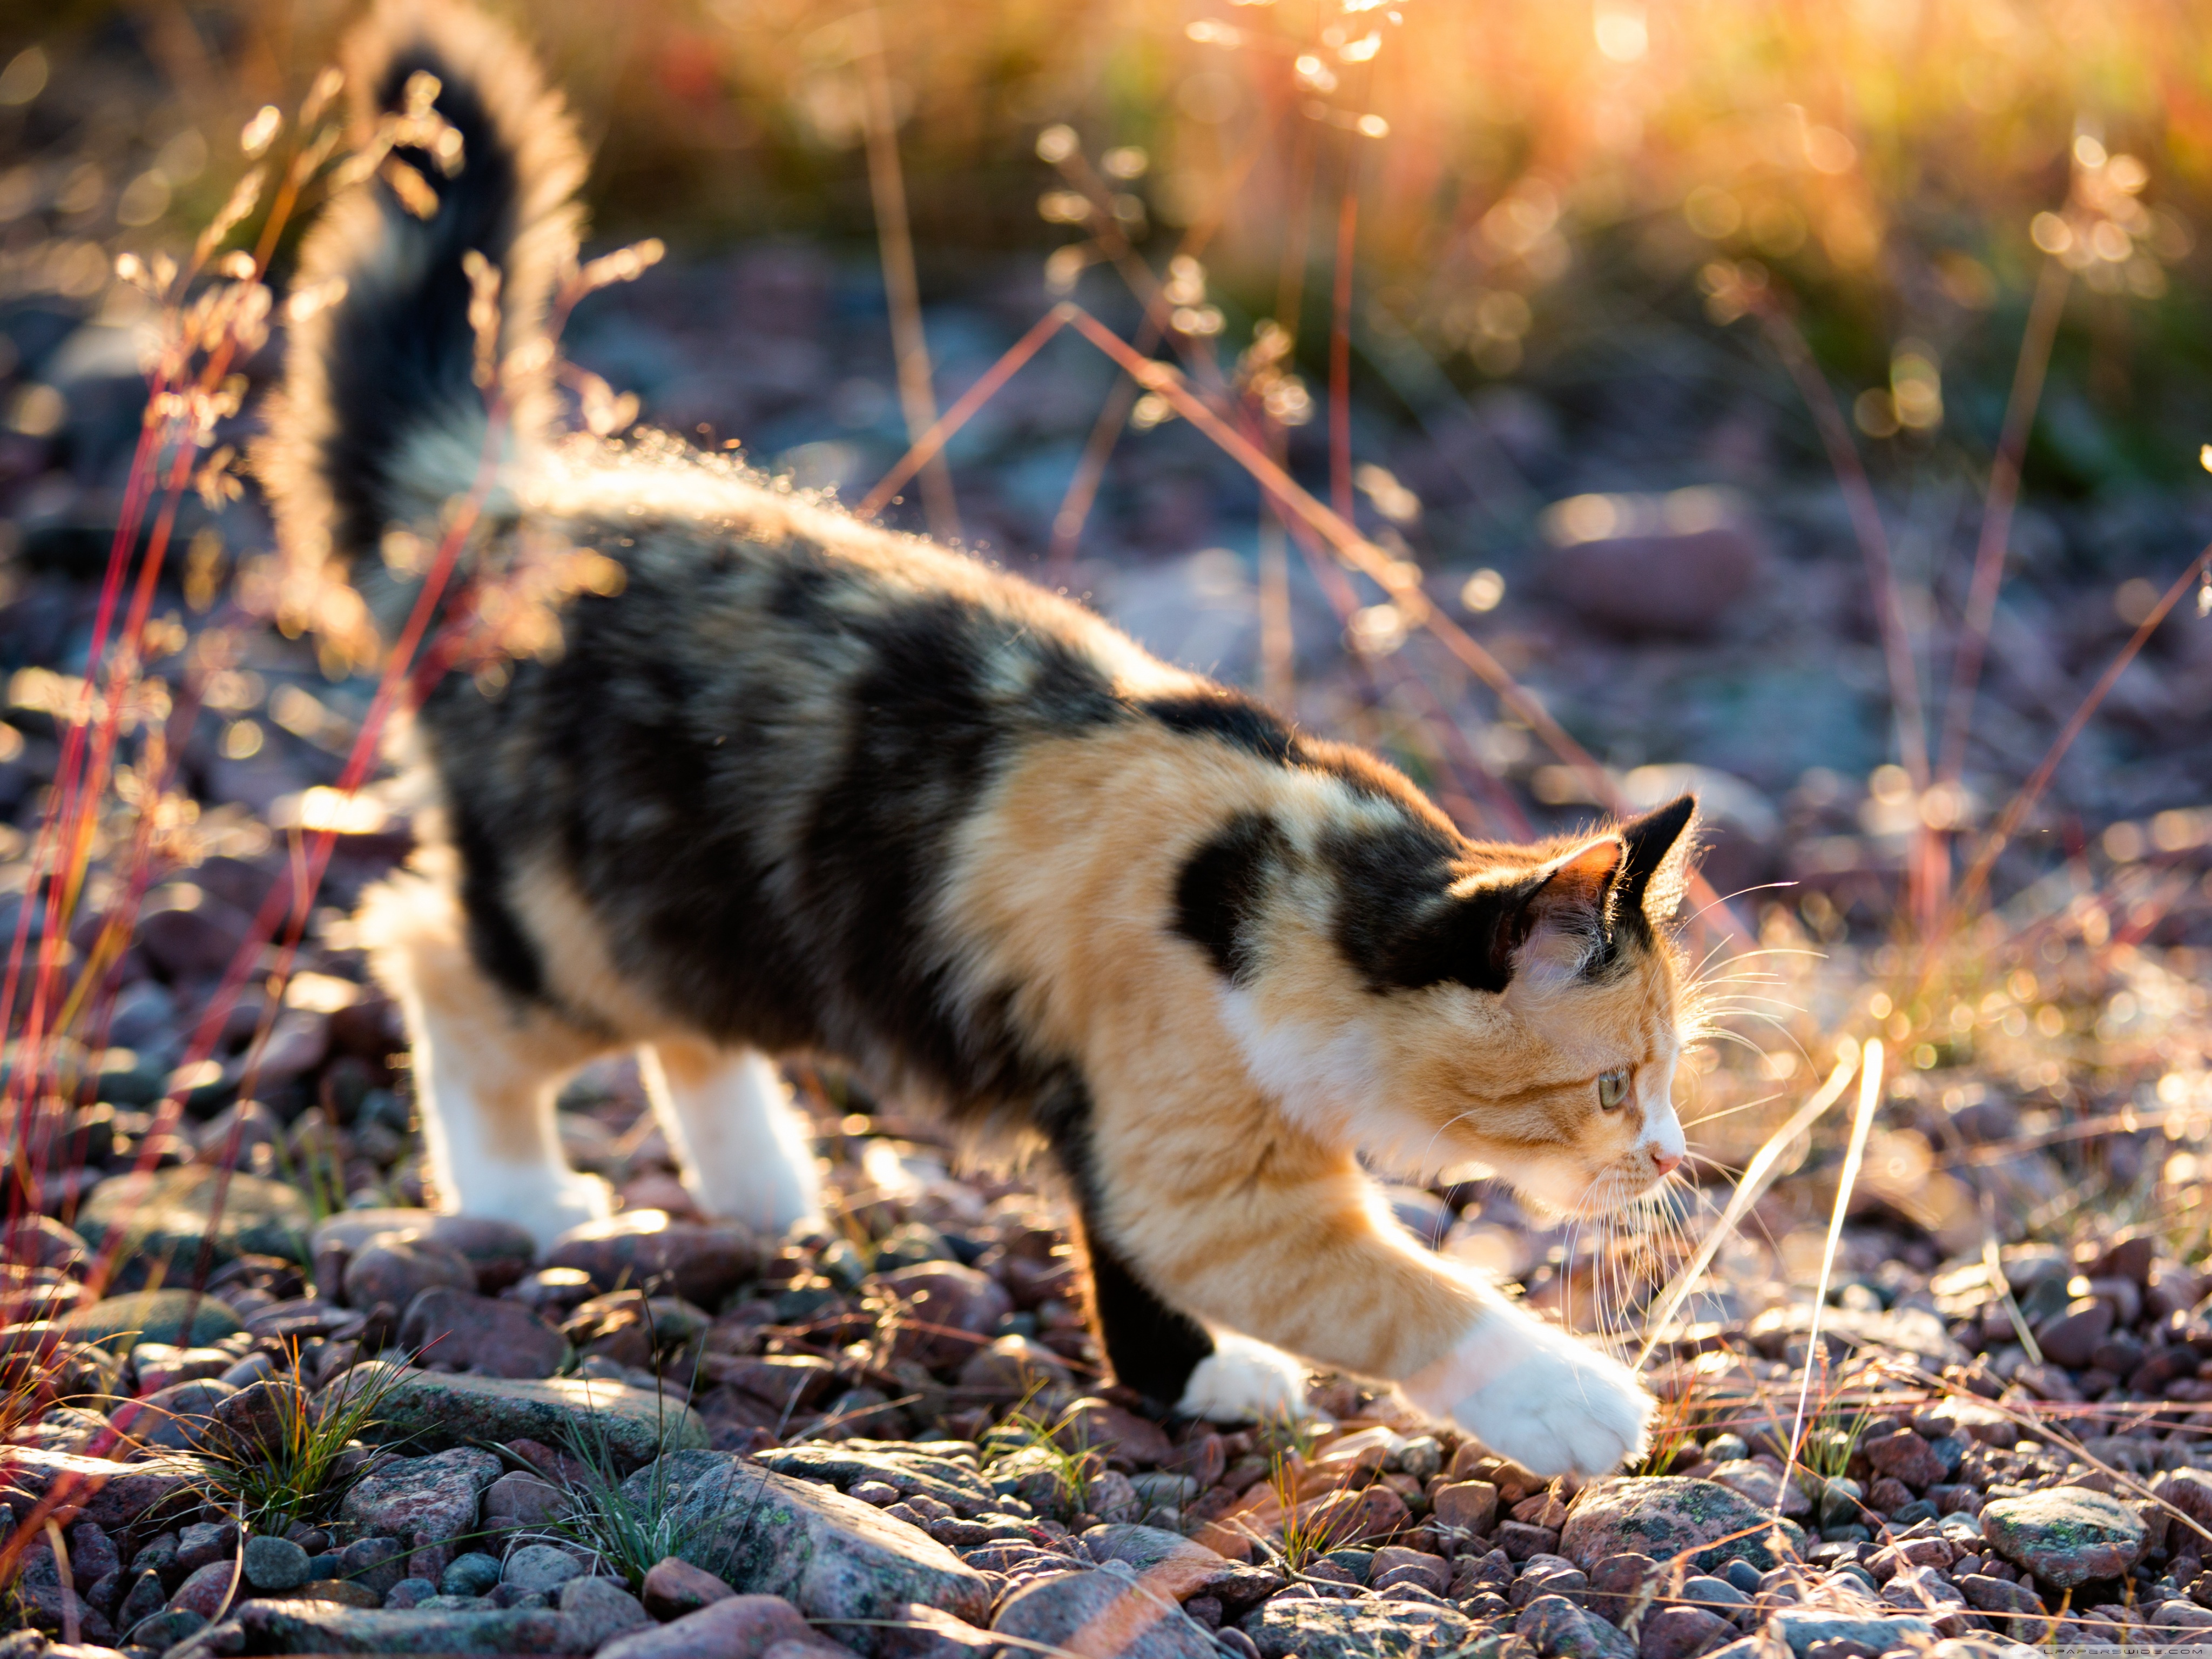 Пестрый кот. Черепаховая кошка Калико. Трехшерстная кошка Калико. Американская жесткошерстная кошка трехцветная. Черепаховая кошка Калико на природе.